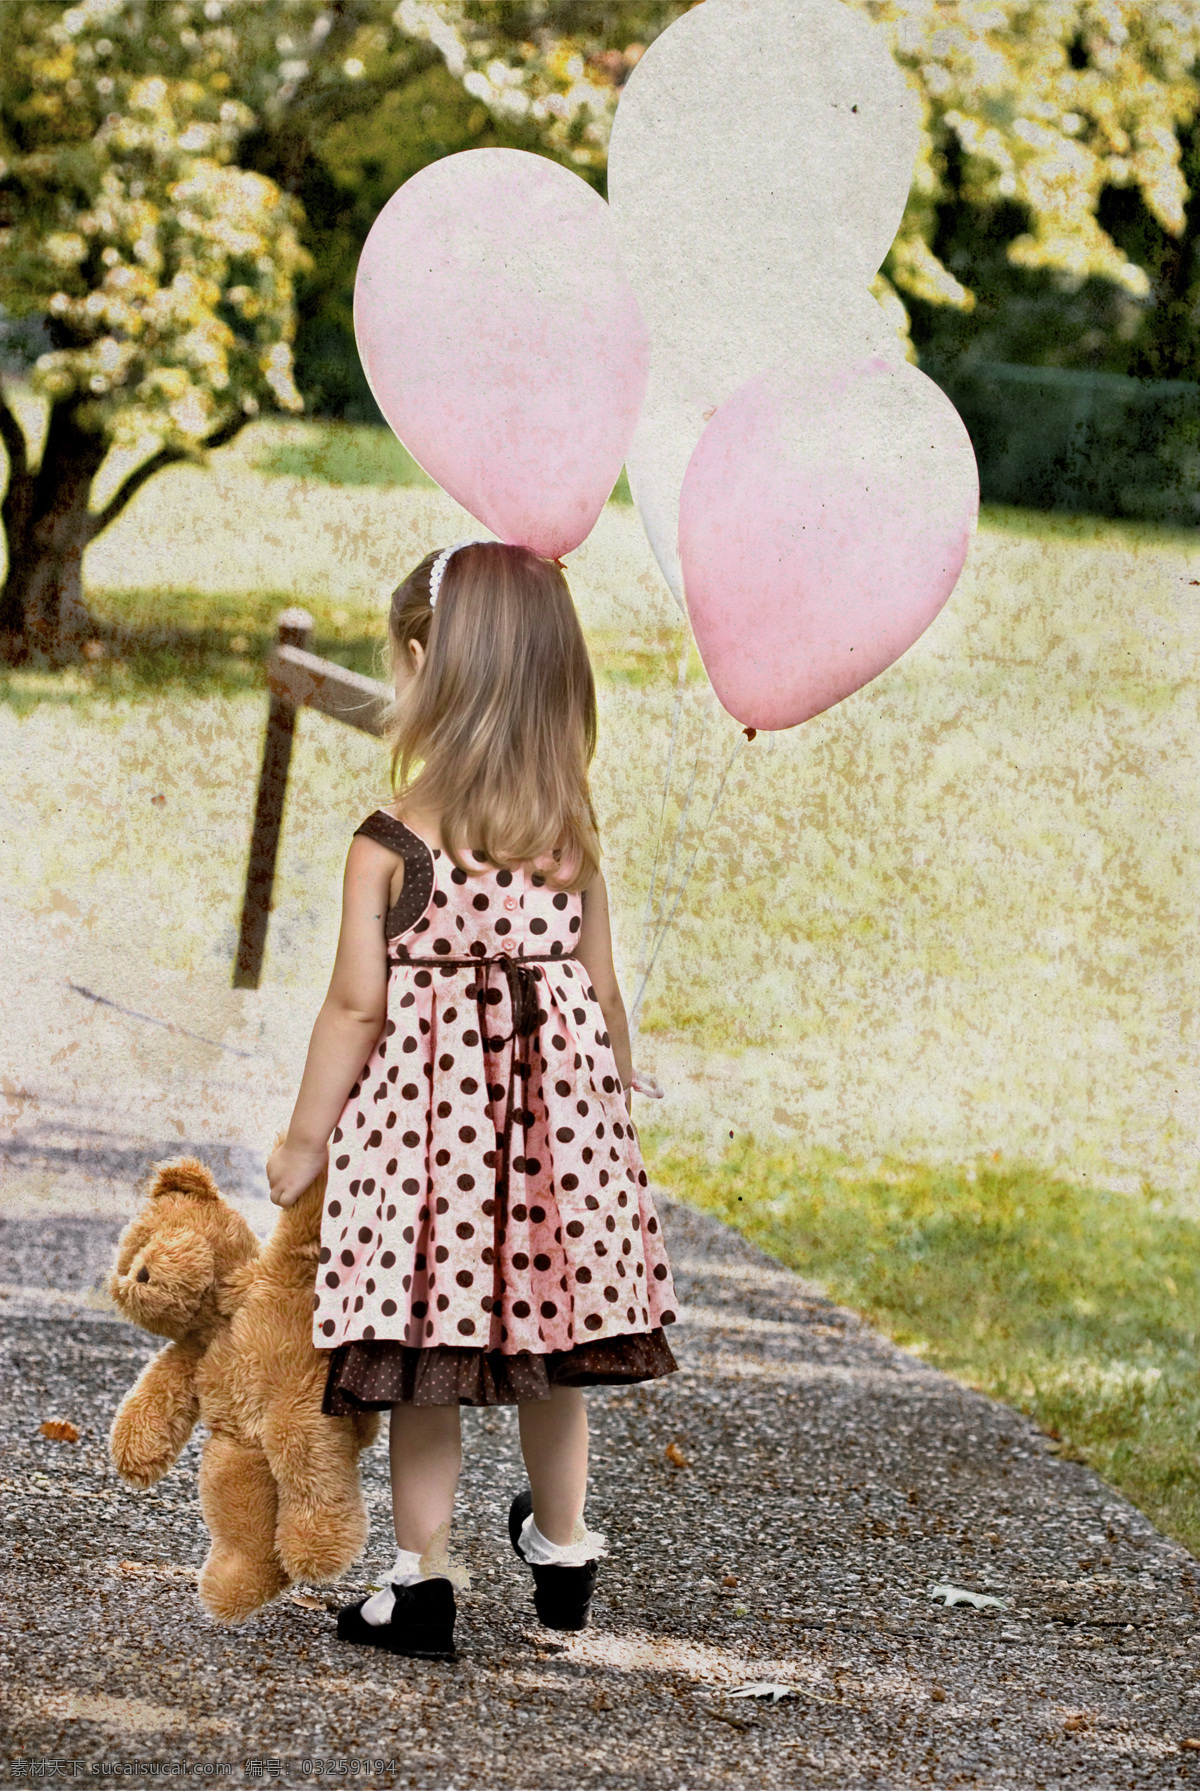 宝贝 儿童幼儿 孩子 可爱 人物图库 幼儿 手 玩具 熊 气球 小女孩 儿童 psd源文件